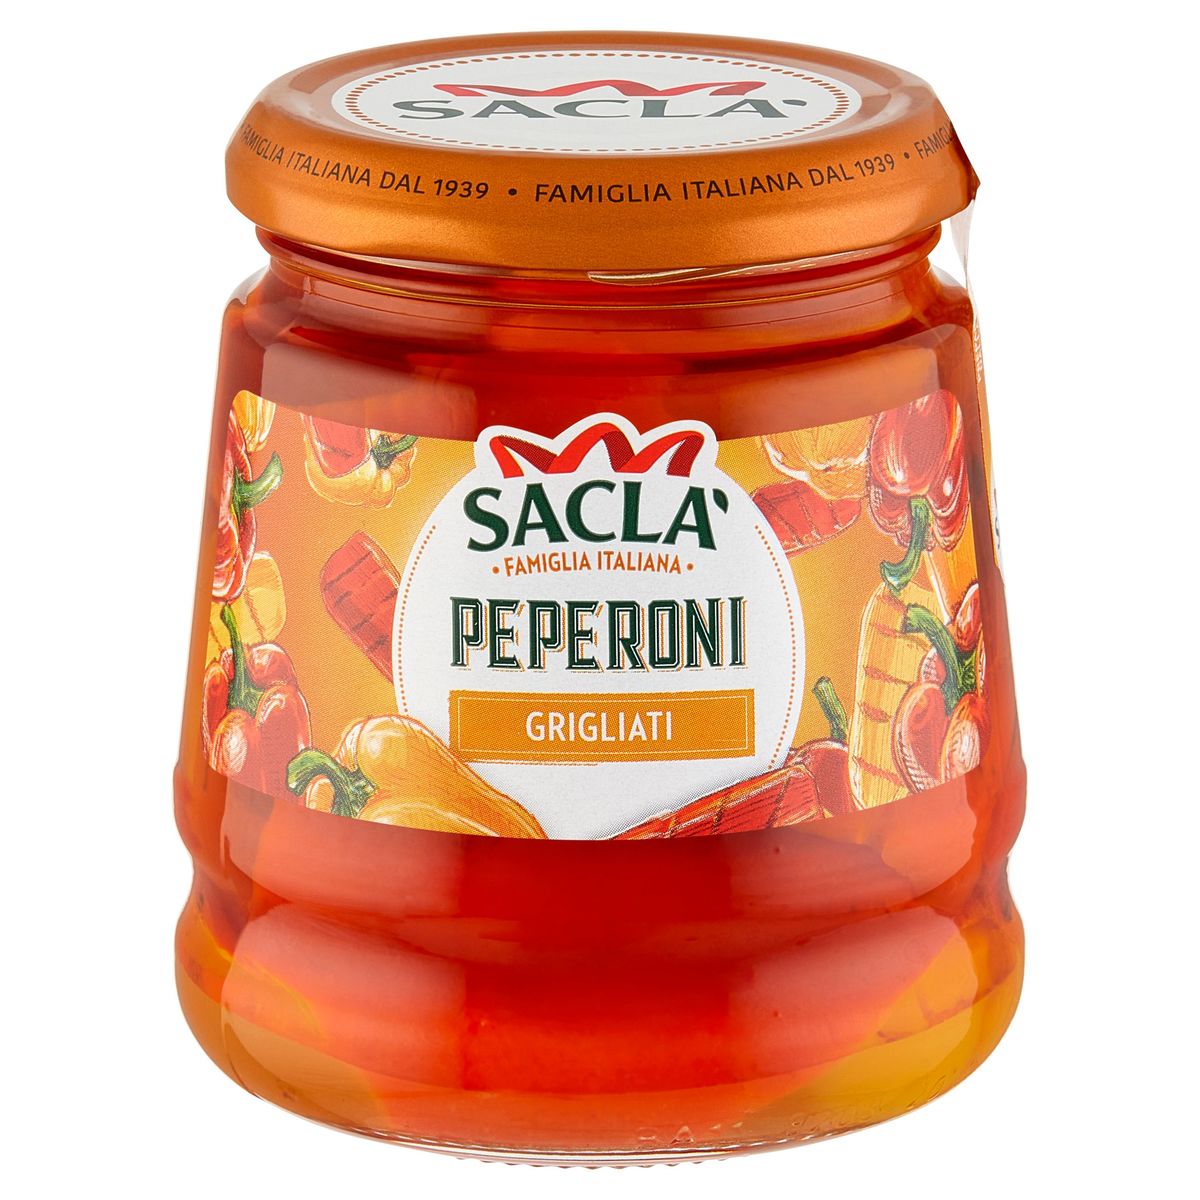 Sacla Peperoni Grigliati 290 g